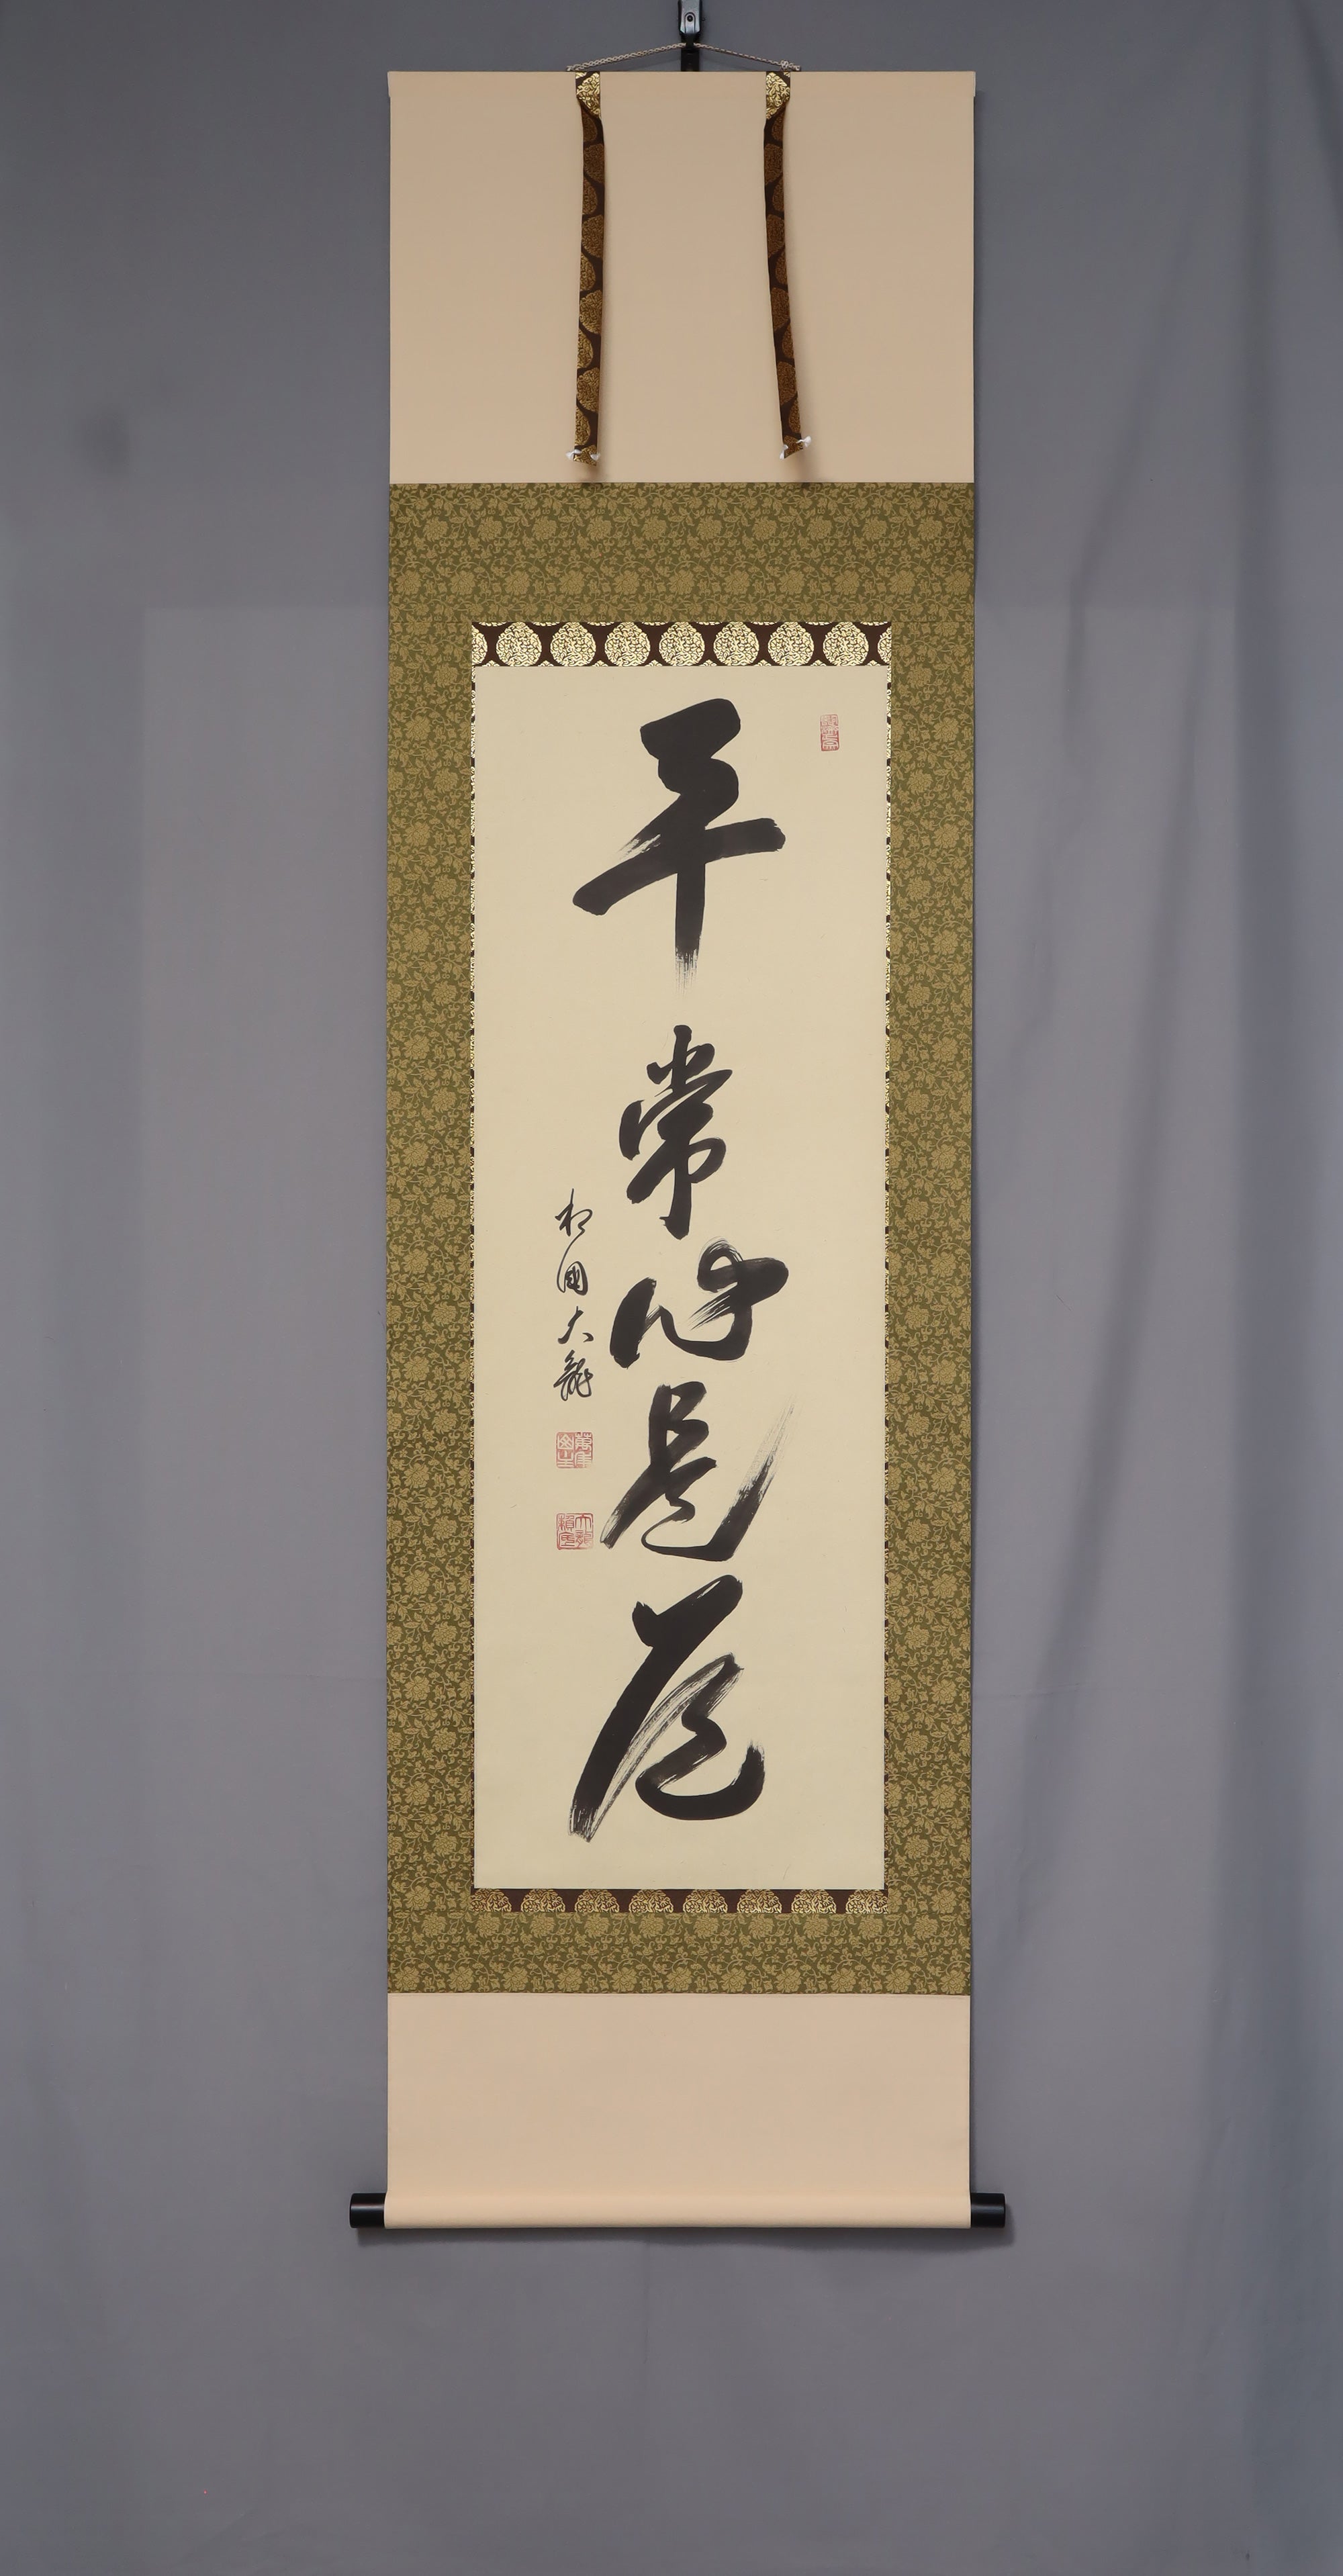 Arima Raitei（b 1933）“ byo-jo-shin zedo” showa-heisei时代